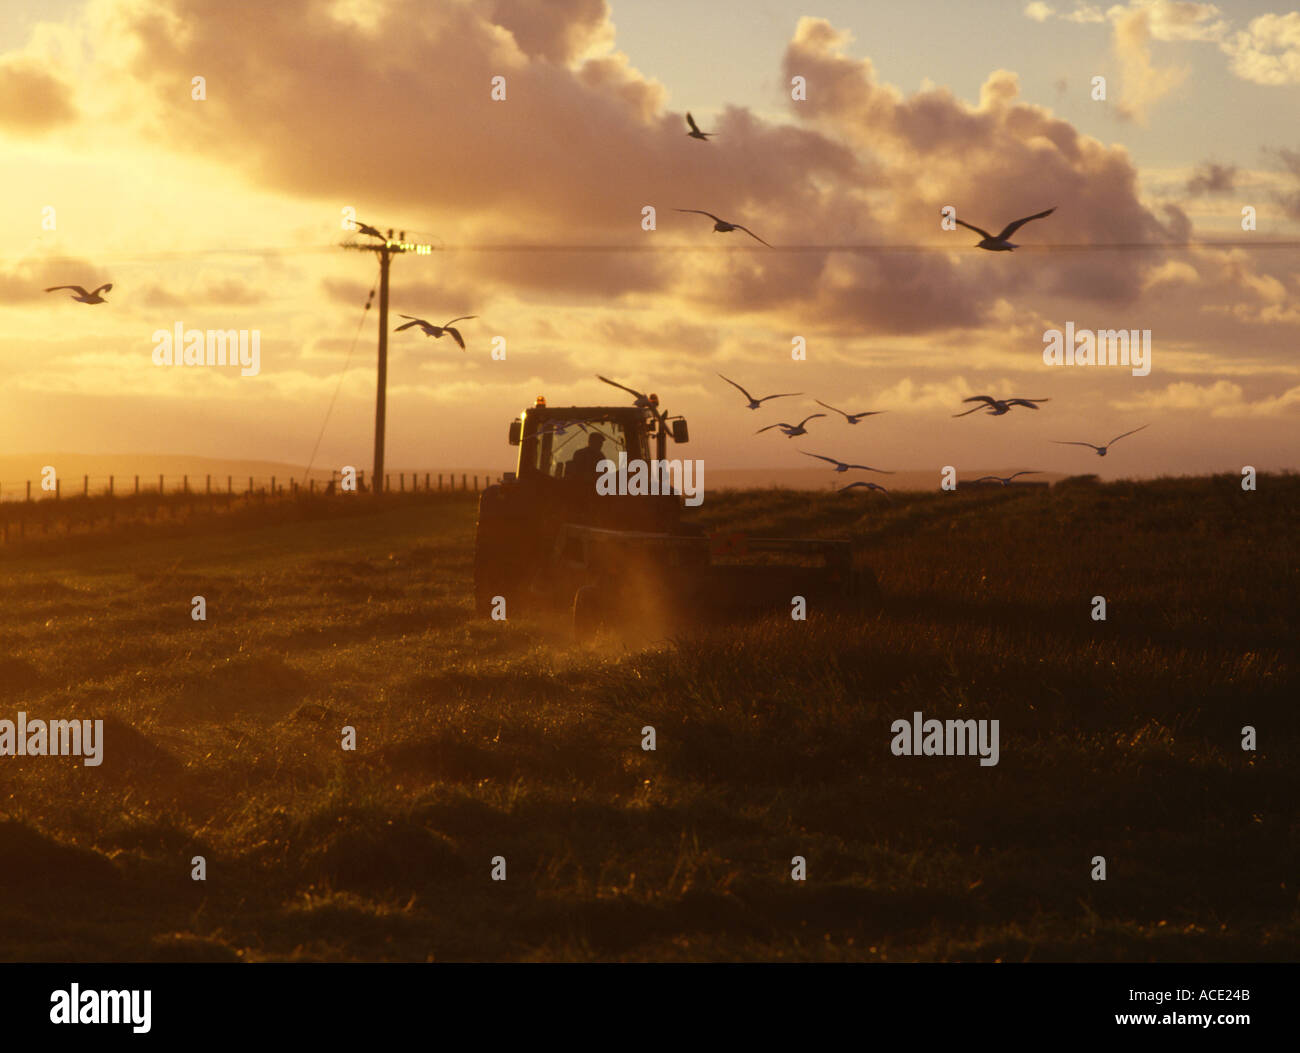 dh Farm Tractor fauchant du foin FAUCHANT du Royaume-Uni Écosse coucher de soleil avec des mouettes après la récolte fermier du royaume-uni cultivant le champ de crépuscule doré fermiers orkney Banque D'Images